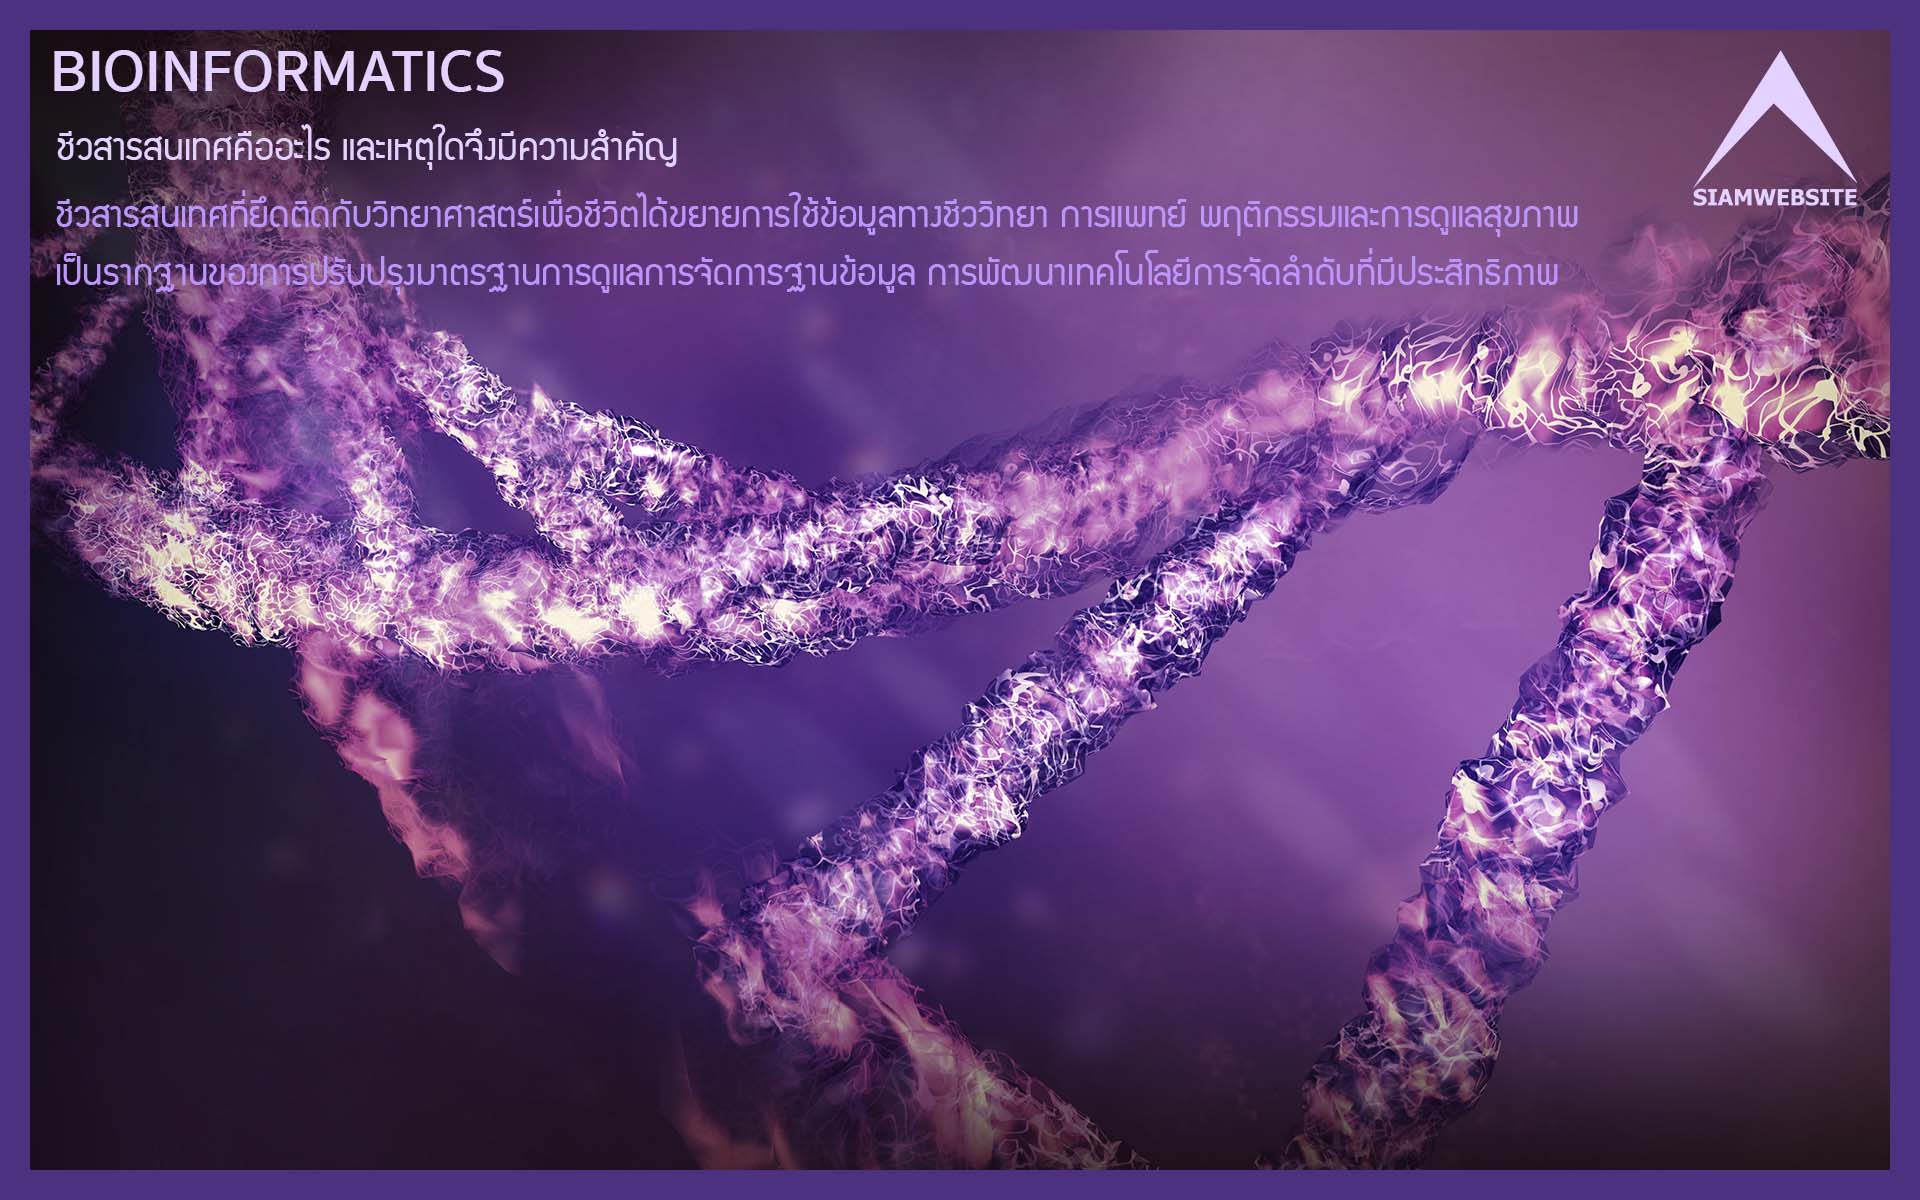 รับทําเว็บไซต์ เว็บขยายสายงาน ชีวสารสนเทศคืออะไร และเหตุใดจึงมีความสำคัญ : Bioinformatics | TTT-WEBSITE 